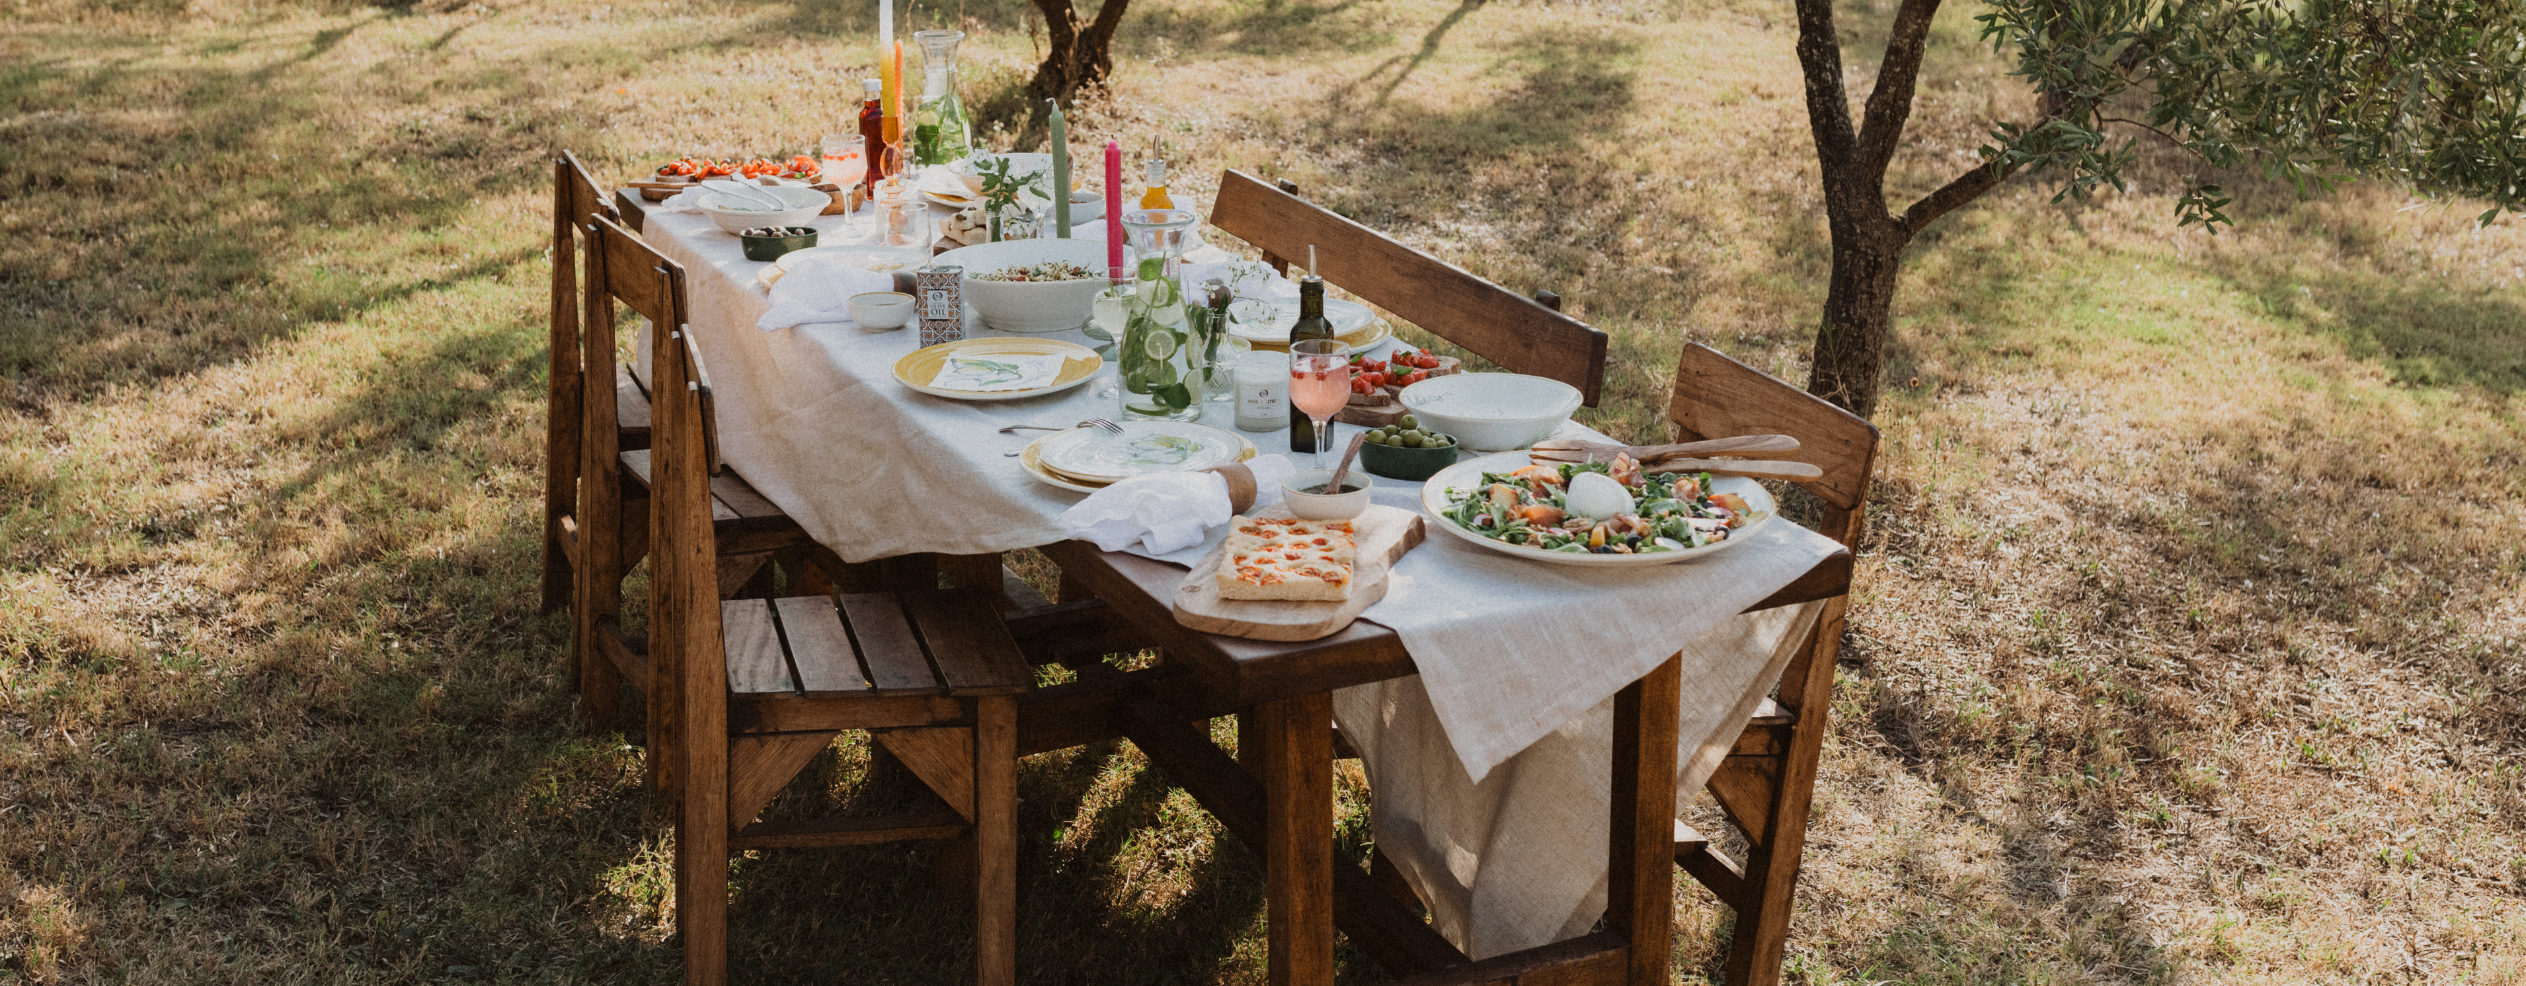 Tisch im freien. Gedeckt mit Salatschüsseln, Pizza, Olivenöl und schönen Servietten.